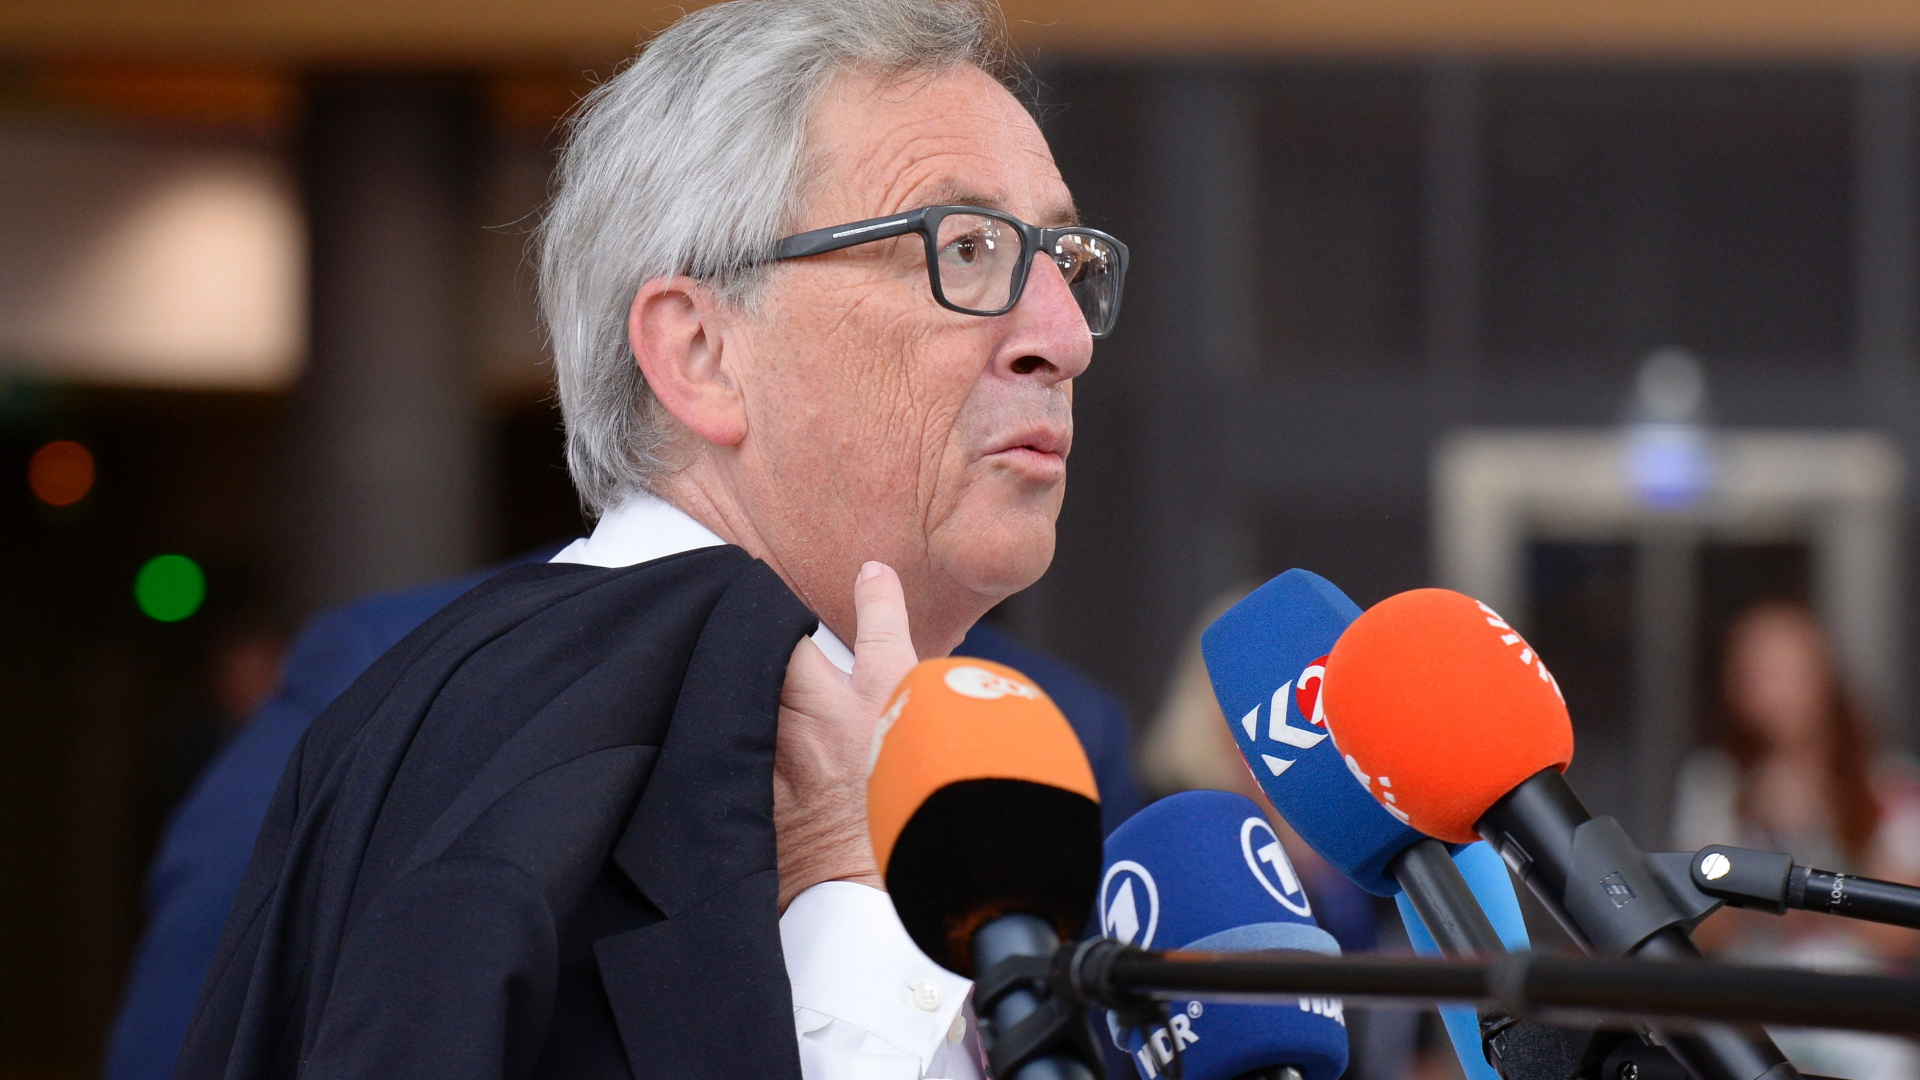 EU-Kommissionspräsident Jean-Claude Juncker | AFP